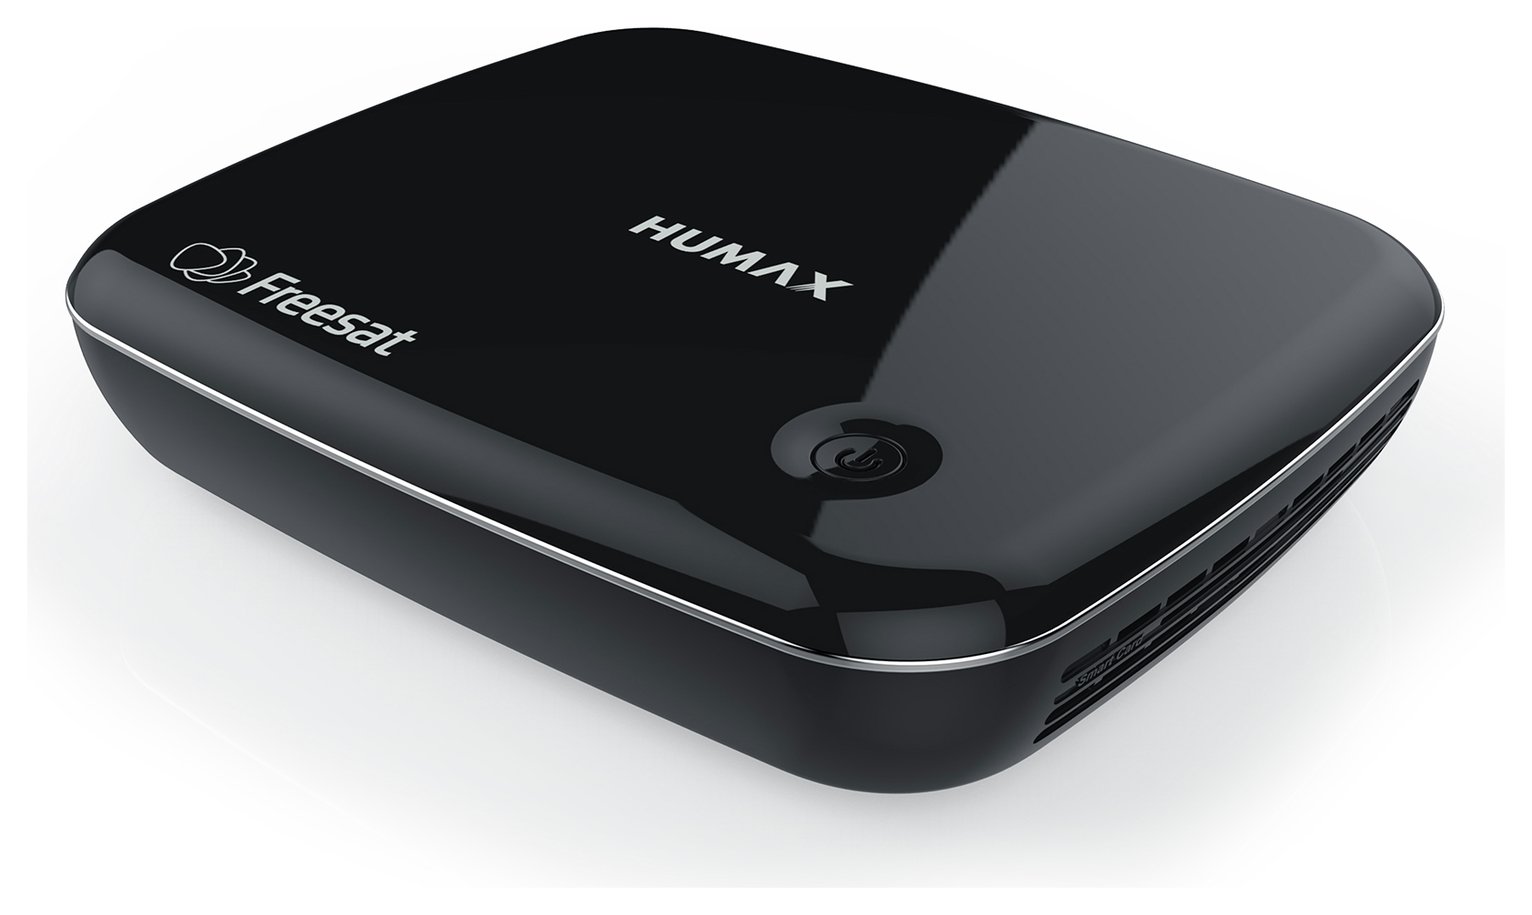 Humax HB-1100S Freesat Box